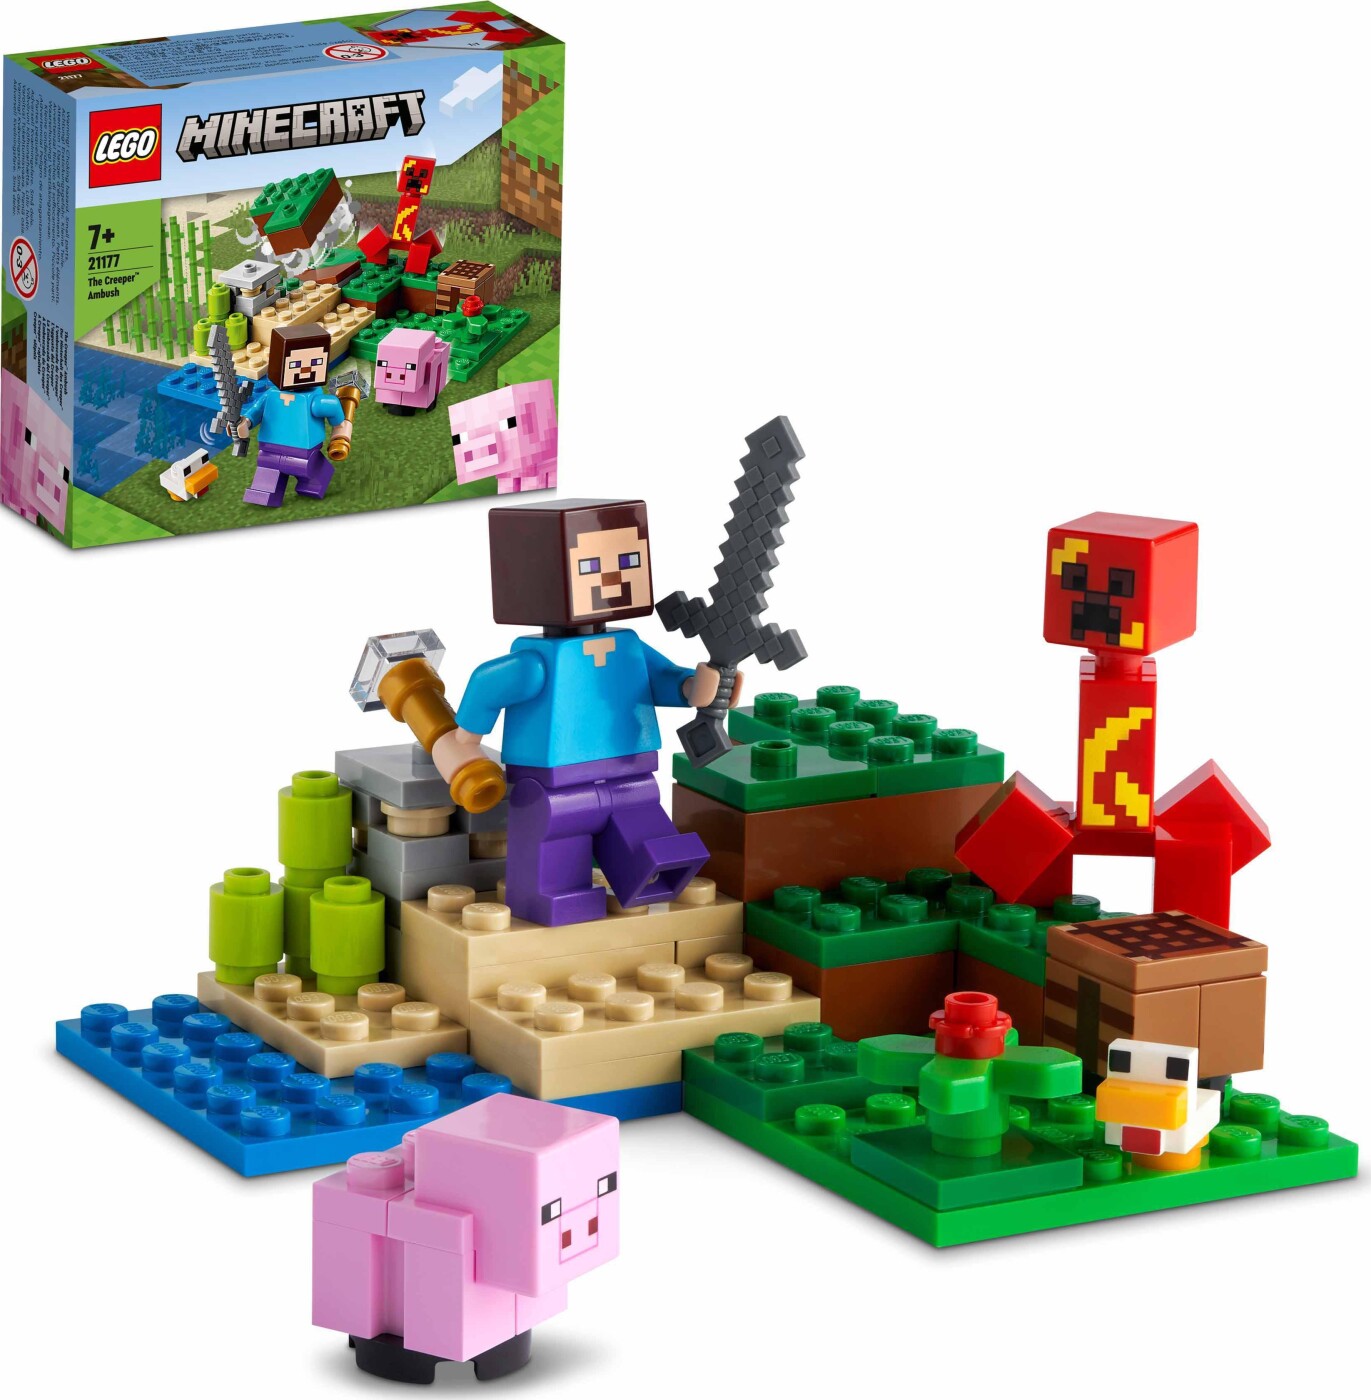 Lego Minecraft - Creeper-bagholdet 21177 | Se tilbud og køb på